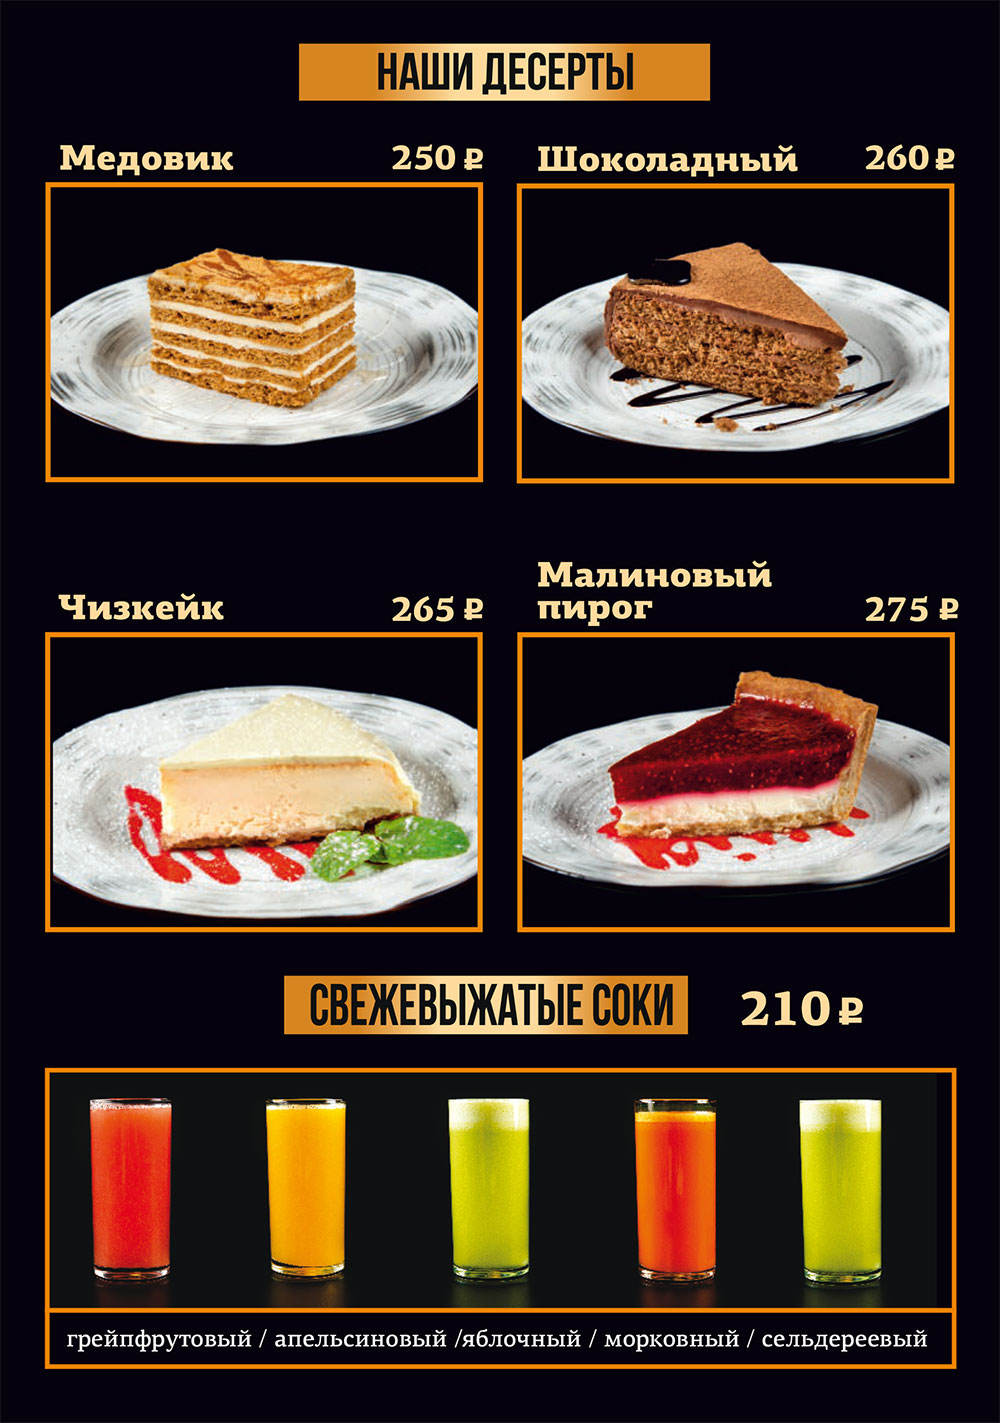 Десерты Профсоюзная